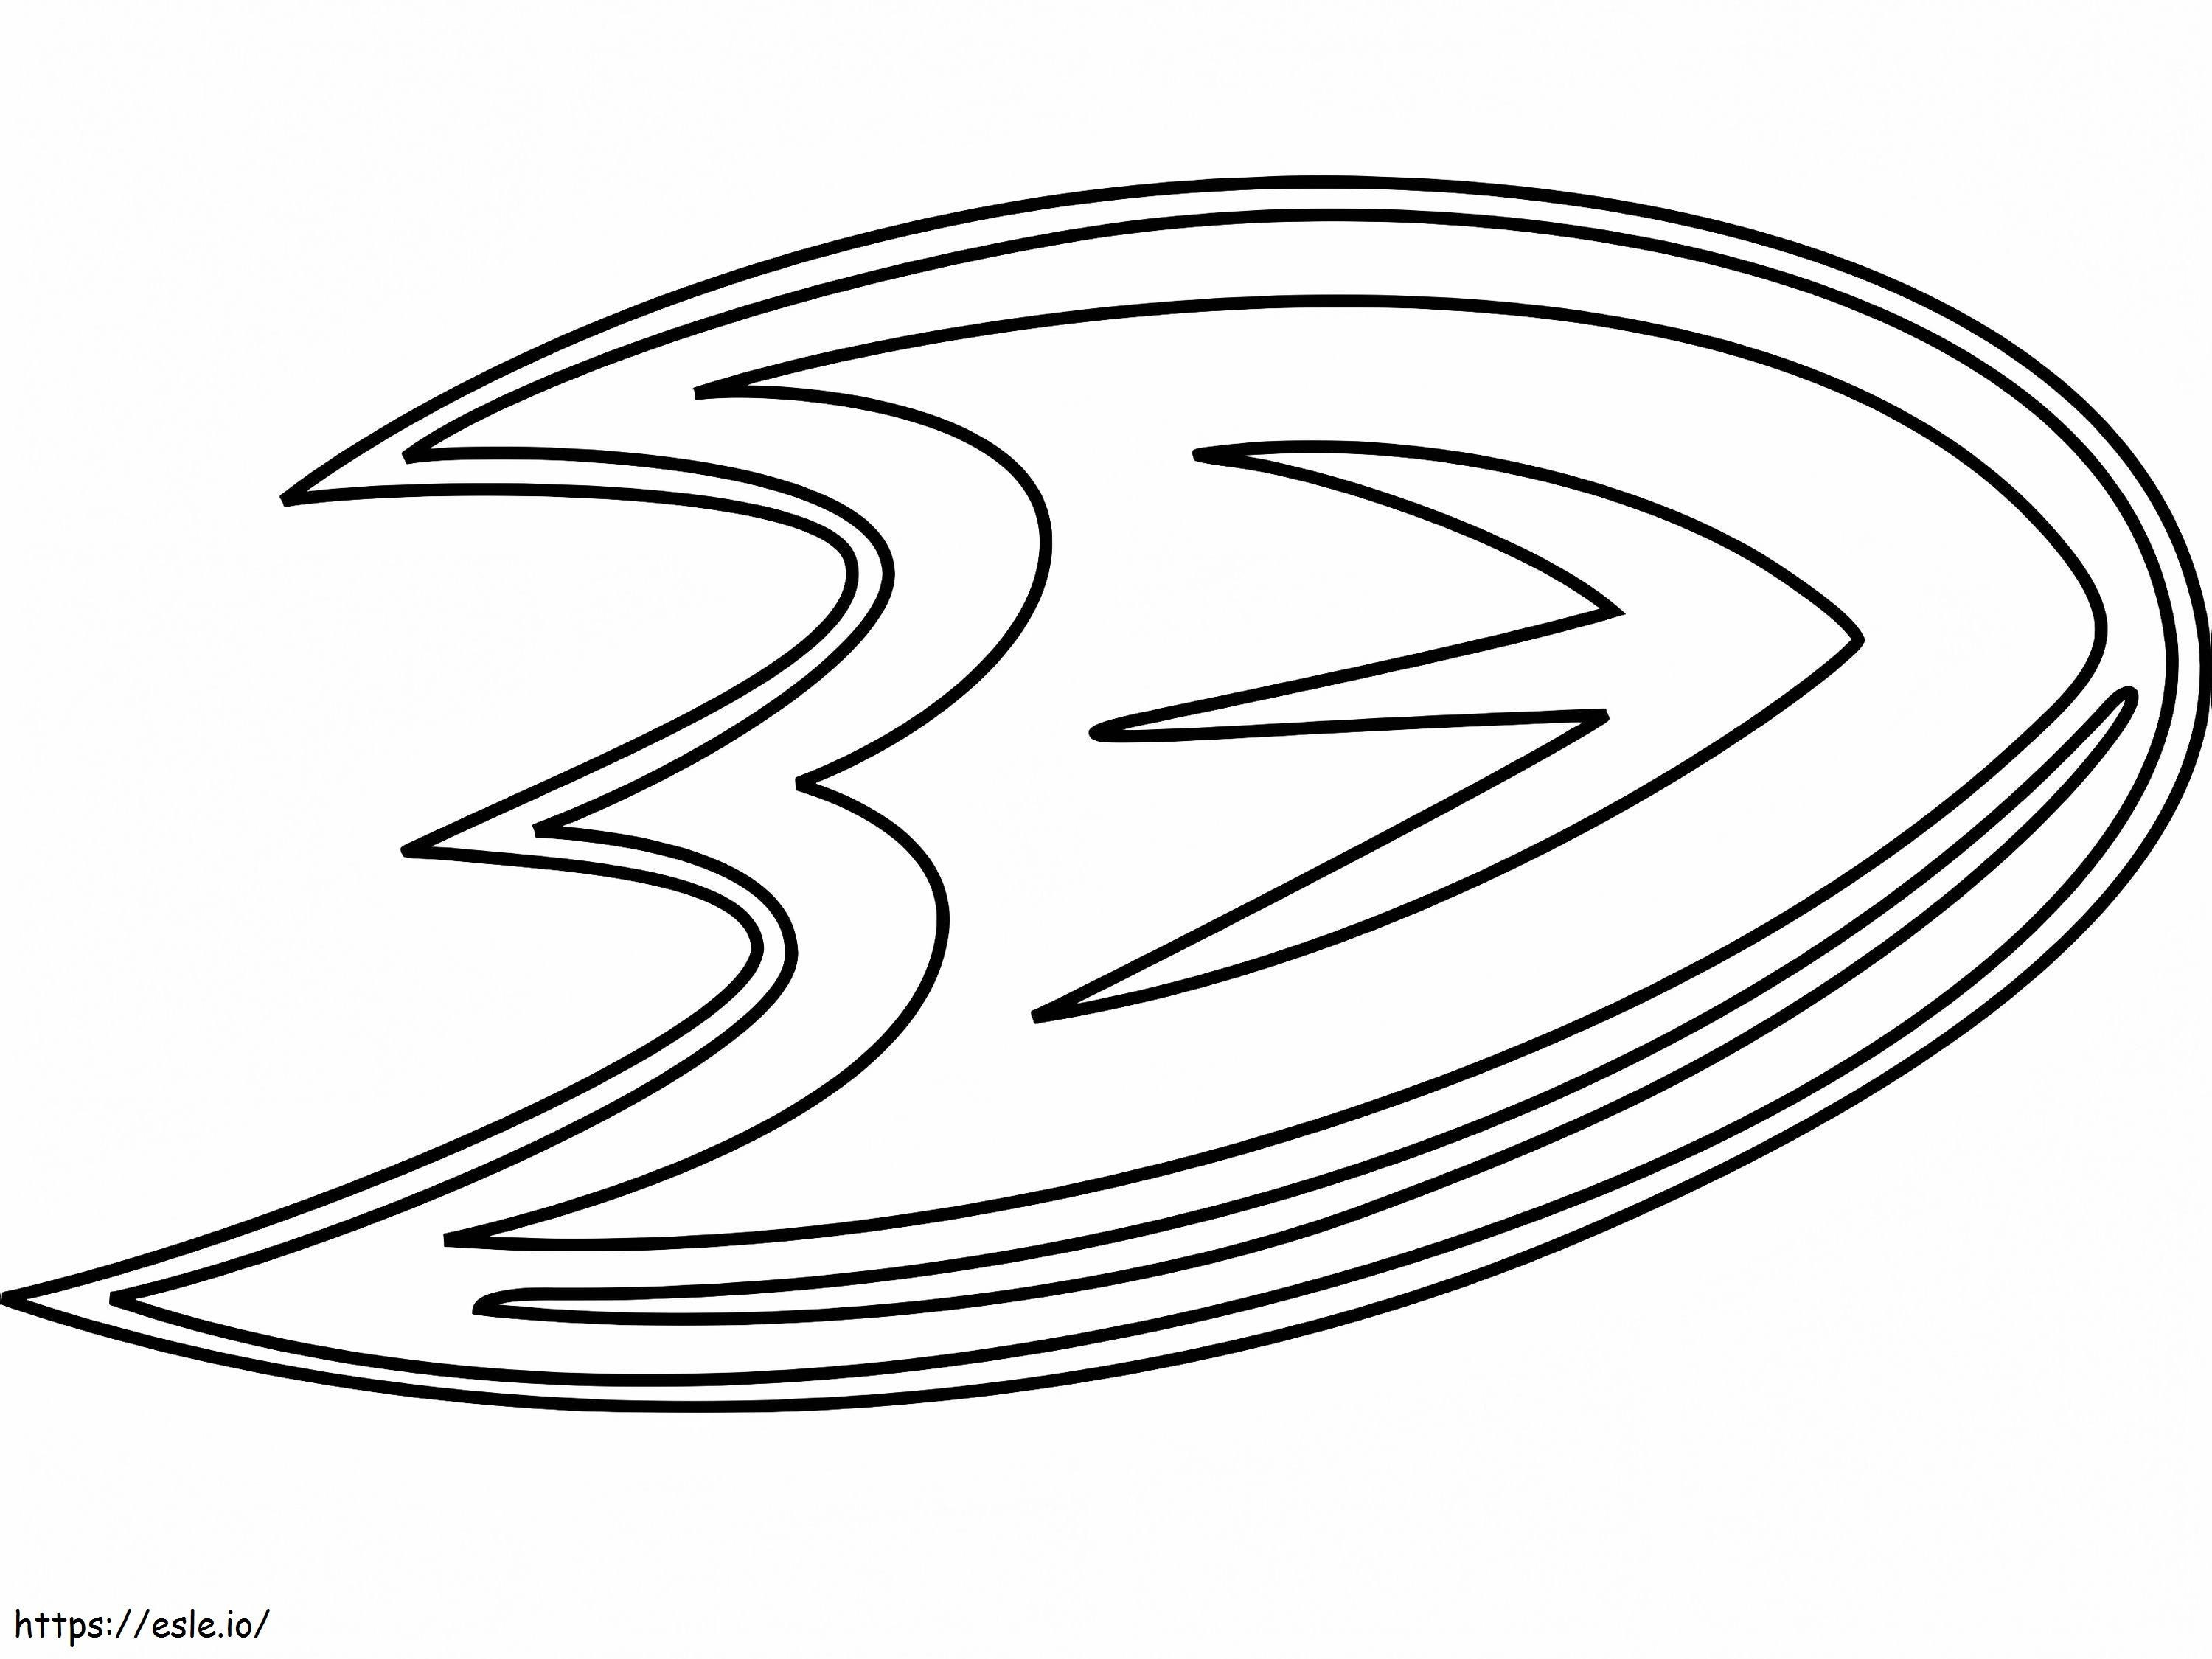 Logotipo de los patos de Anaheim para colorear